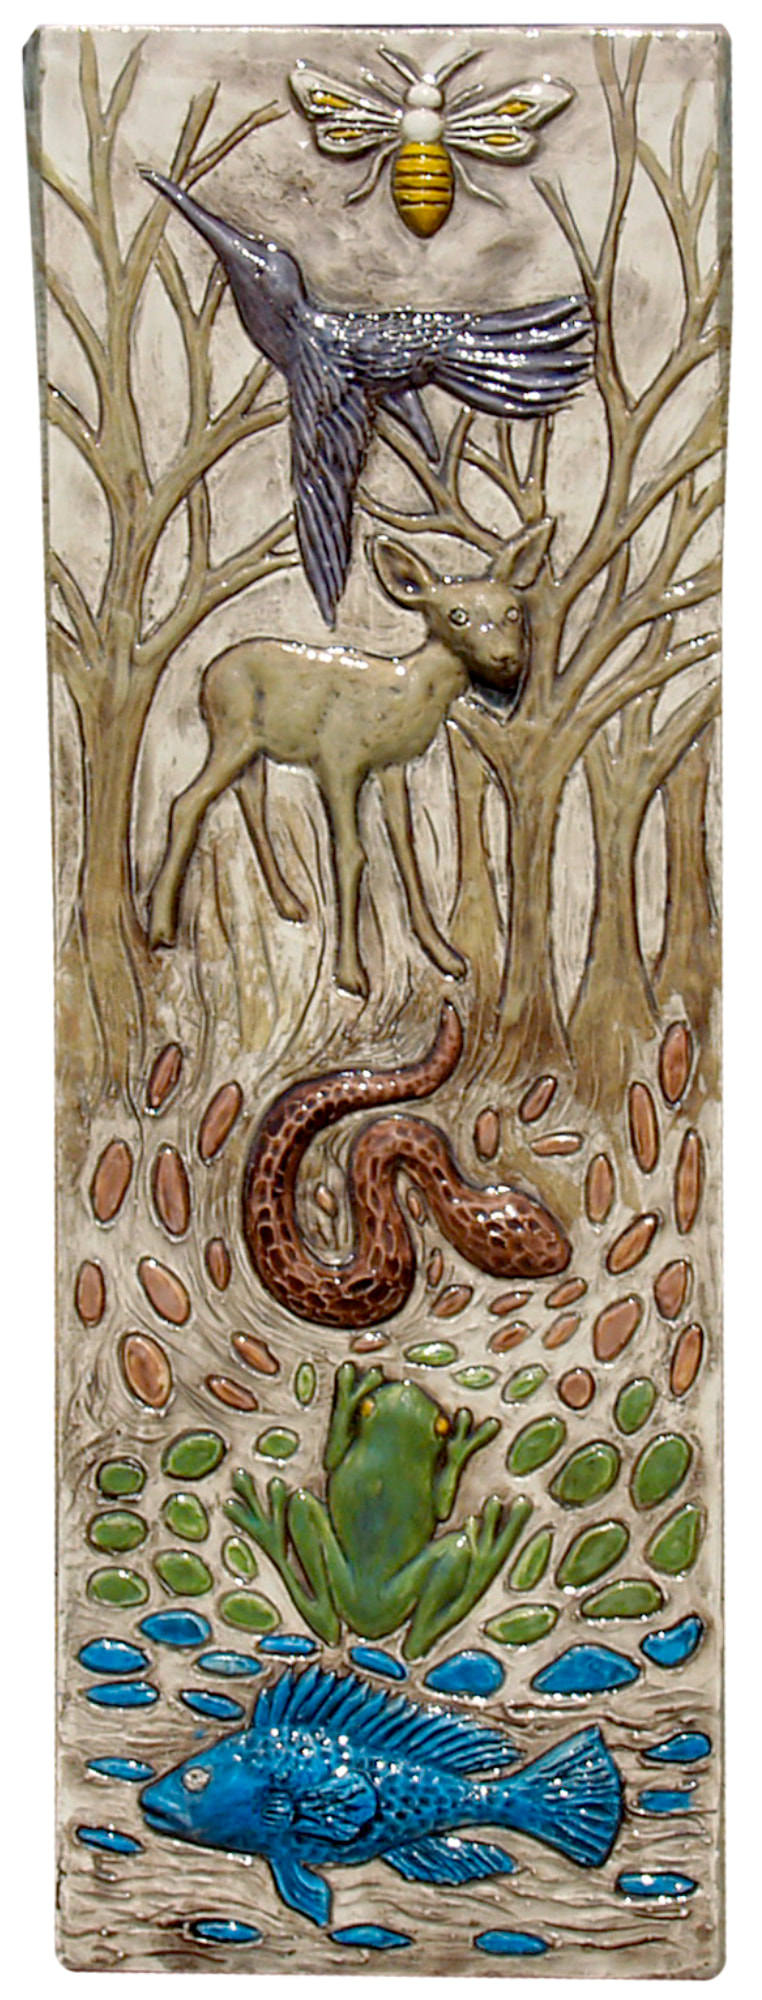 Animals Ceramic Art Tile with Frog, Honeybee, Fish, Deer, Trees